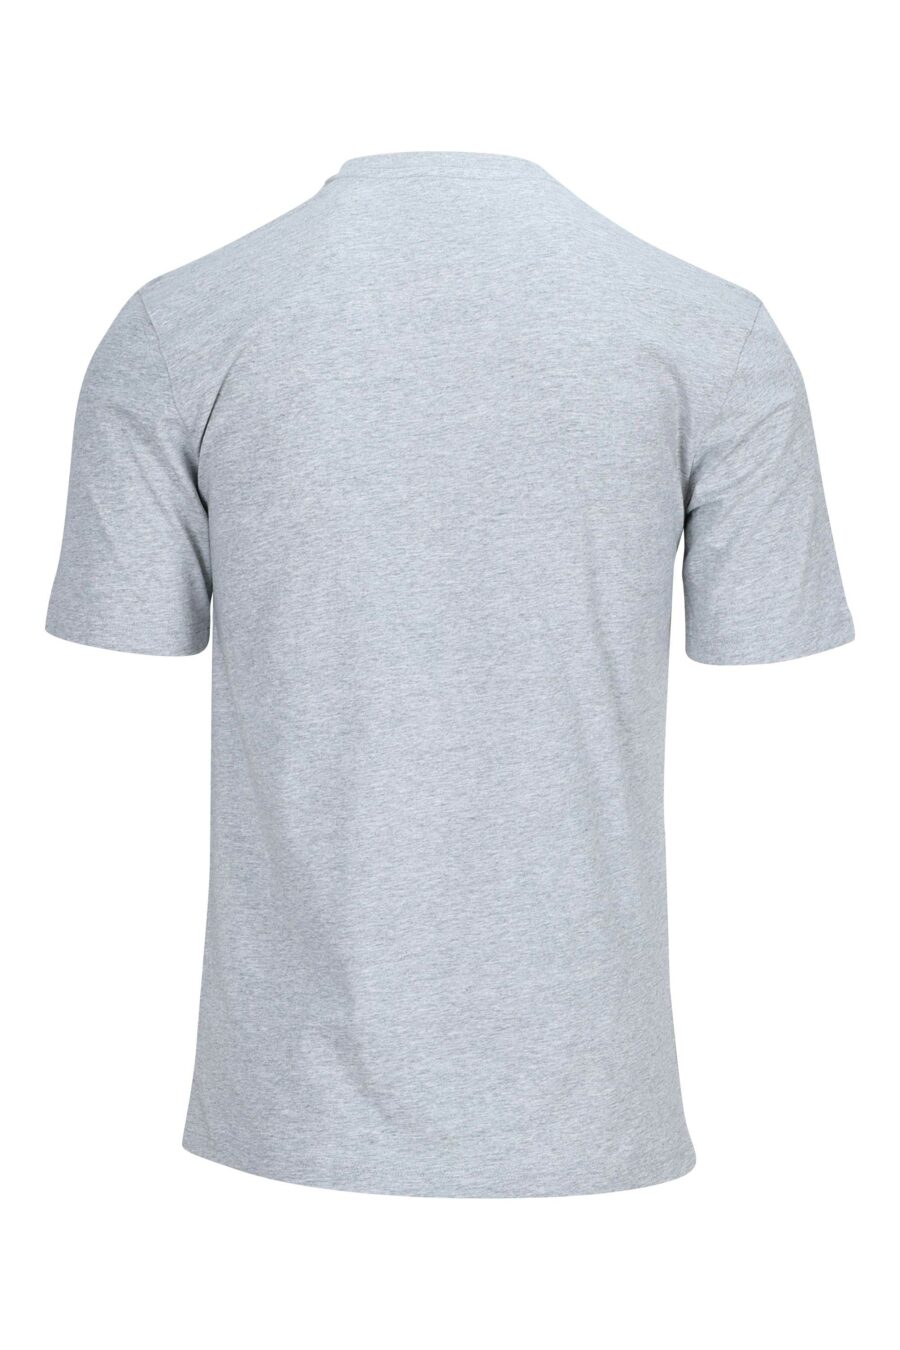 T-shirt gris avec ceinture noire maxilogo - 889316938029 1